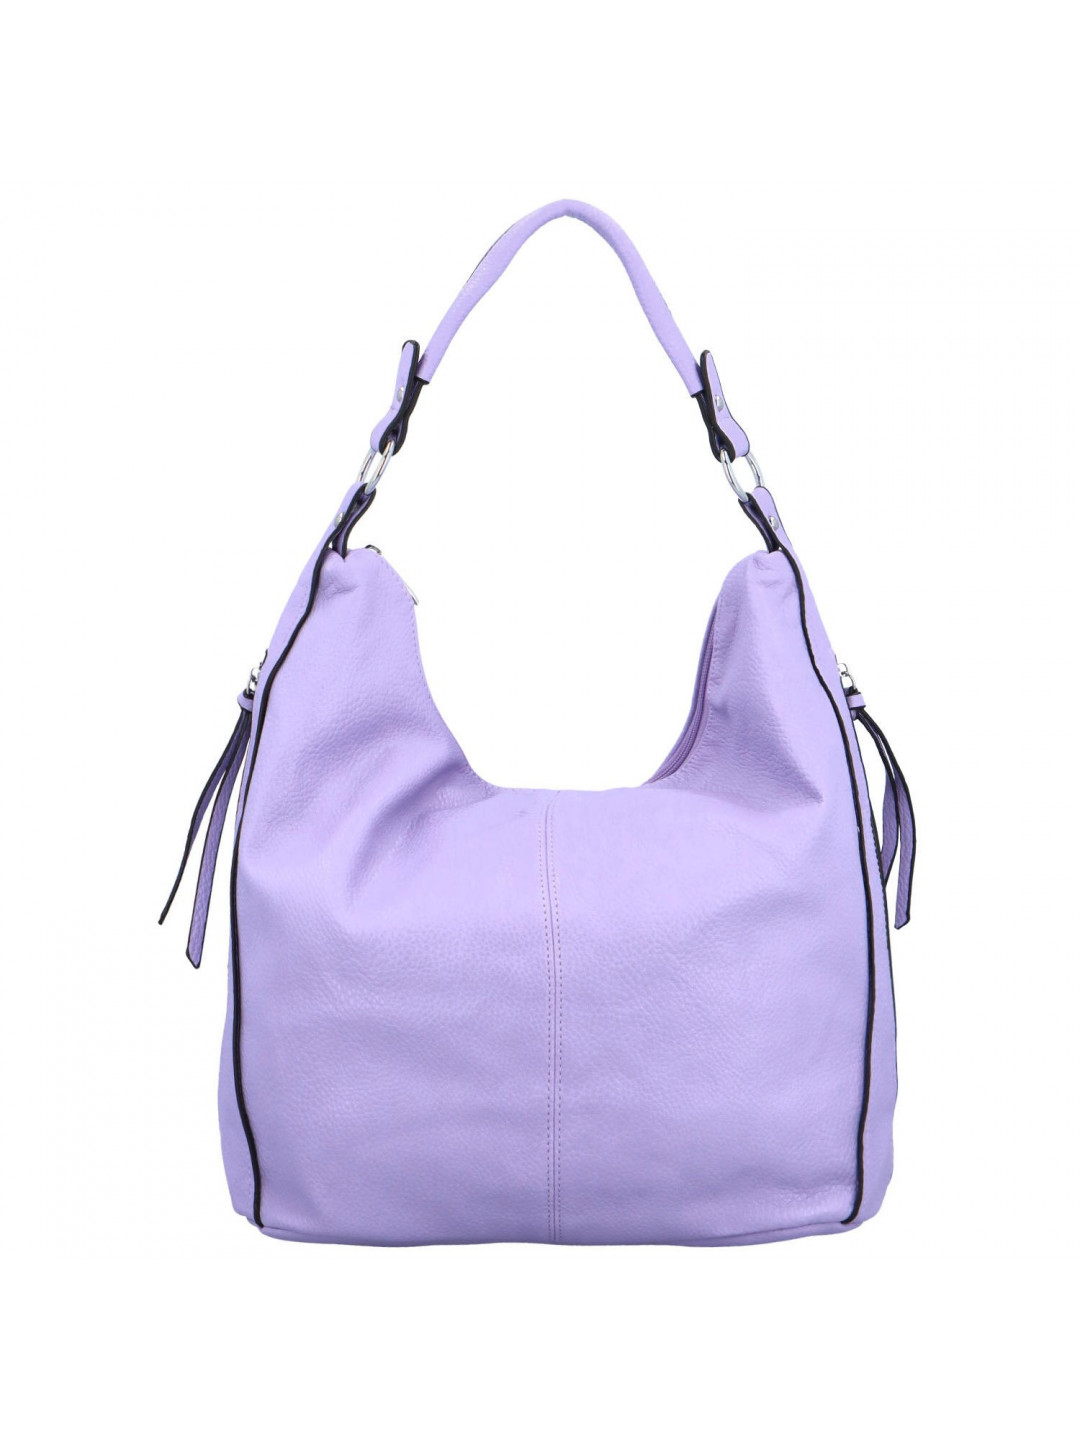 Dámská kabelka na rameno fialová – Romina & Co Bags Gracia